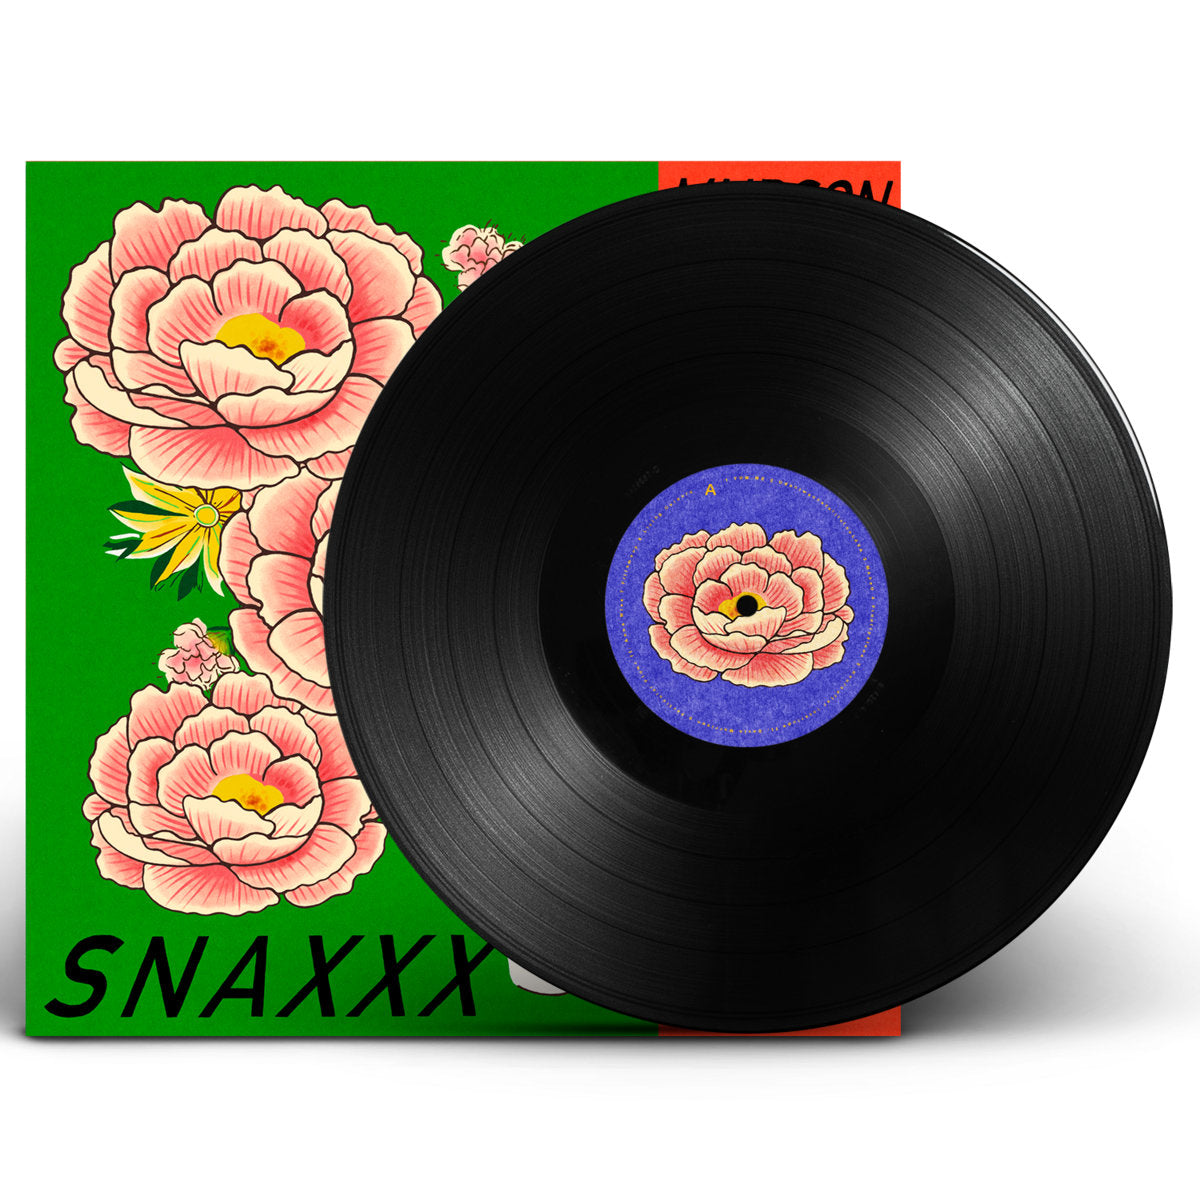 Mndsgn - Snaxxx: Vinyl LP